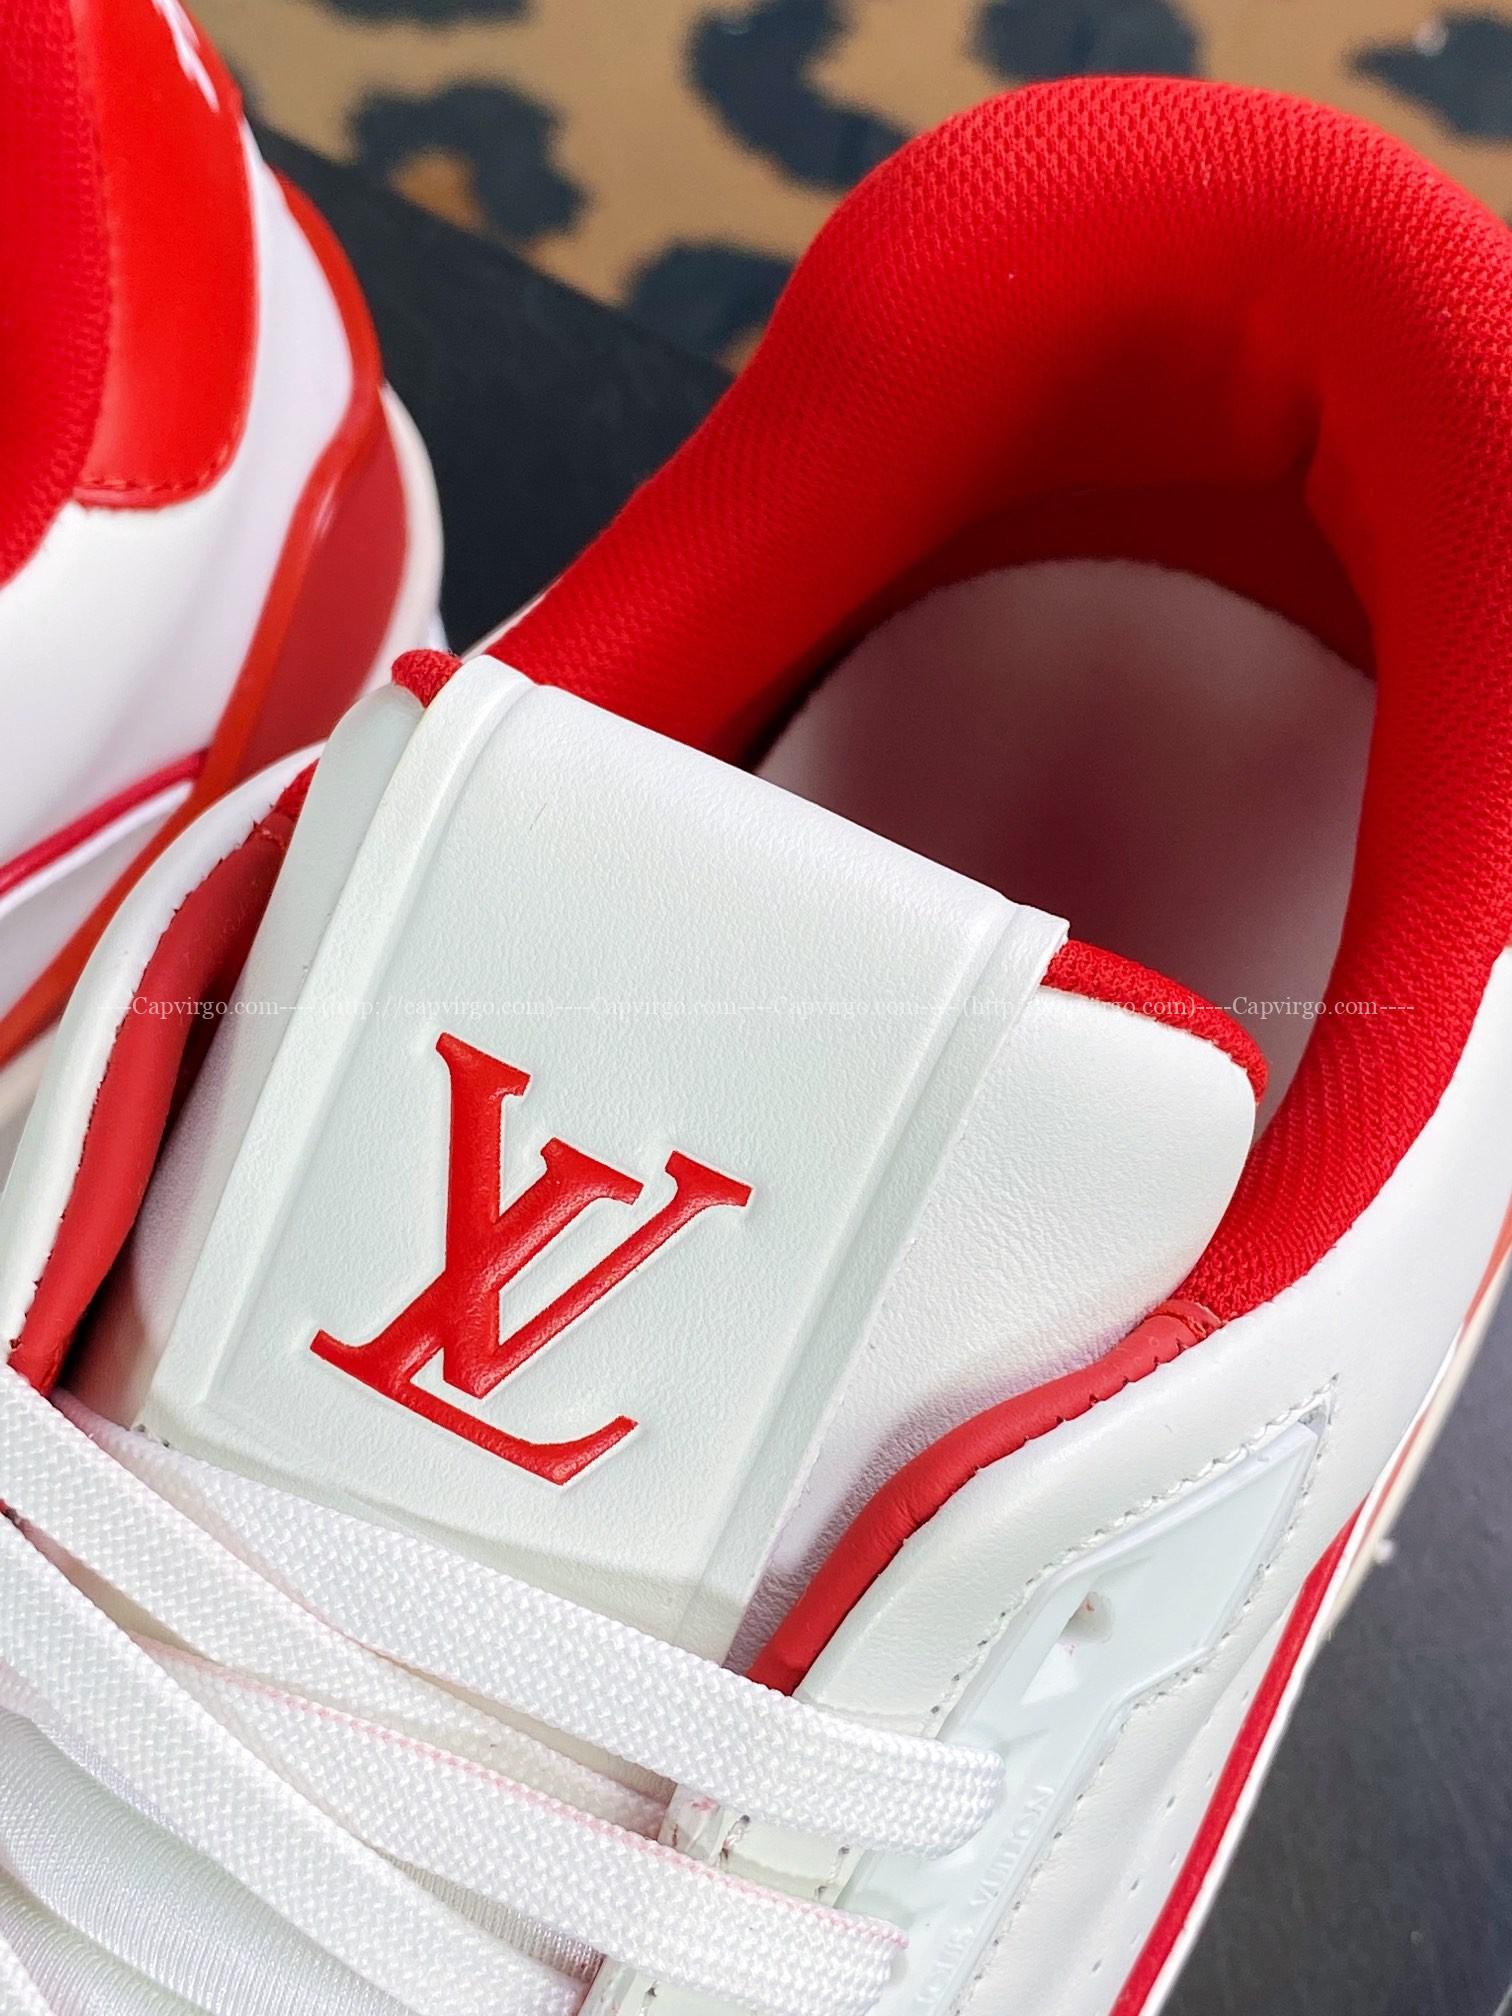 Giày thể thao Louis Vuitton (LV) siêu cấp màu trắng phối đỏ